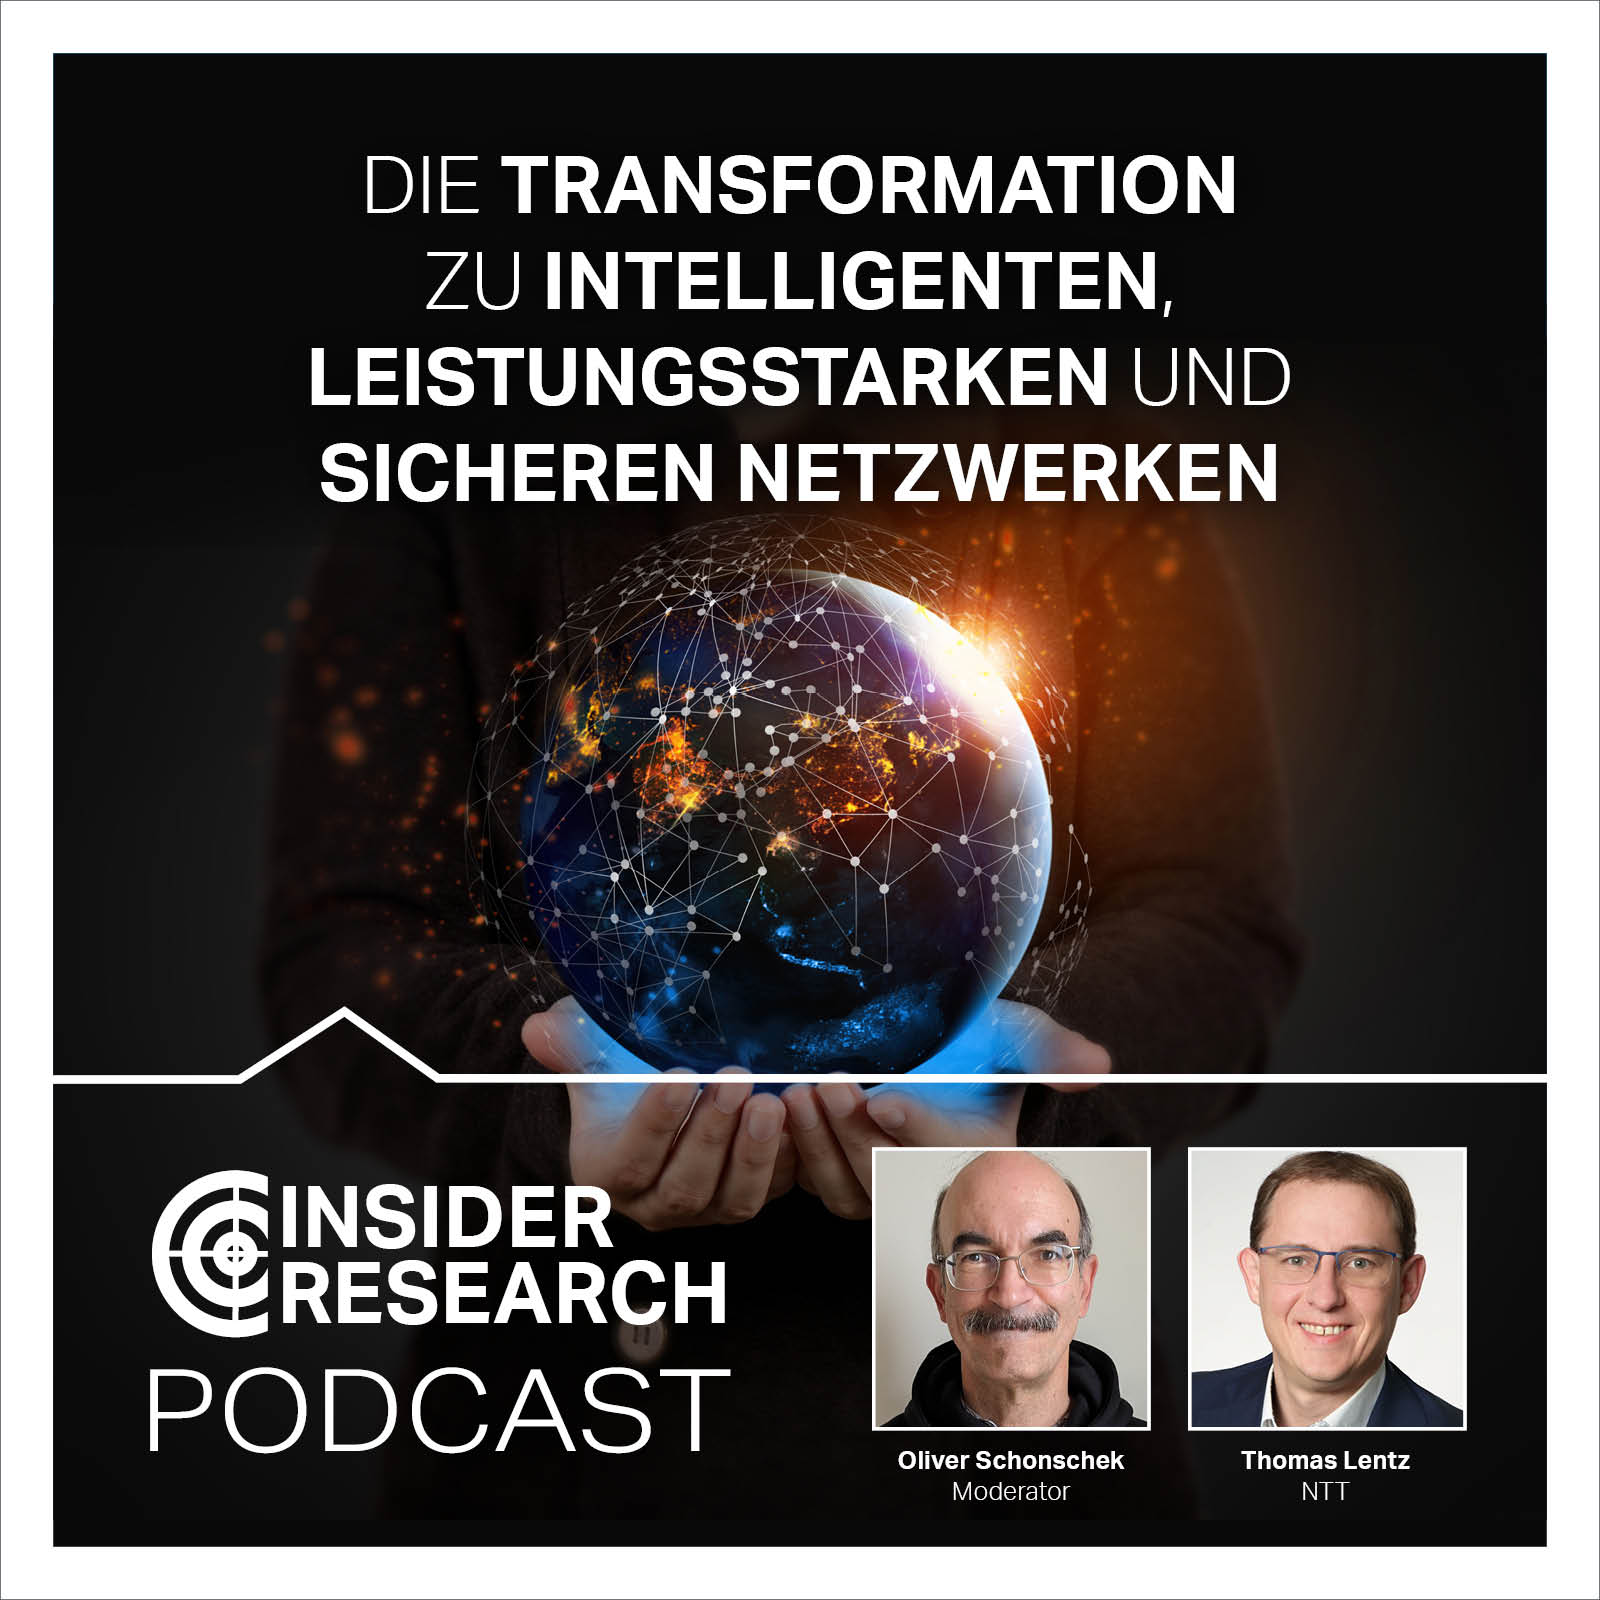 Die Transformation zu intelligenten, leistungsstarken und sicheren Netzwerken, mit Thomas Lentz von NTT Germany